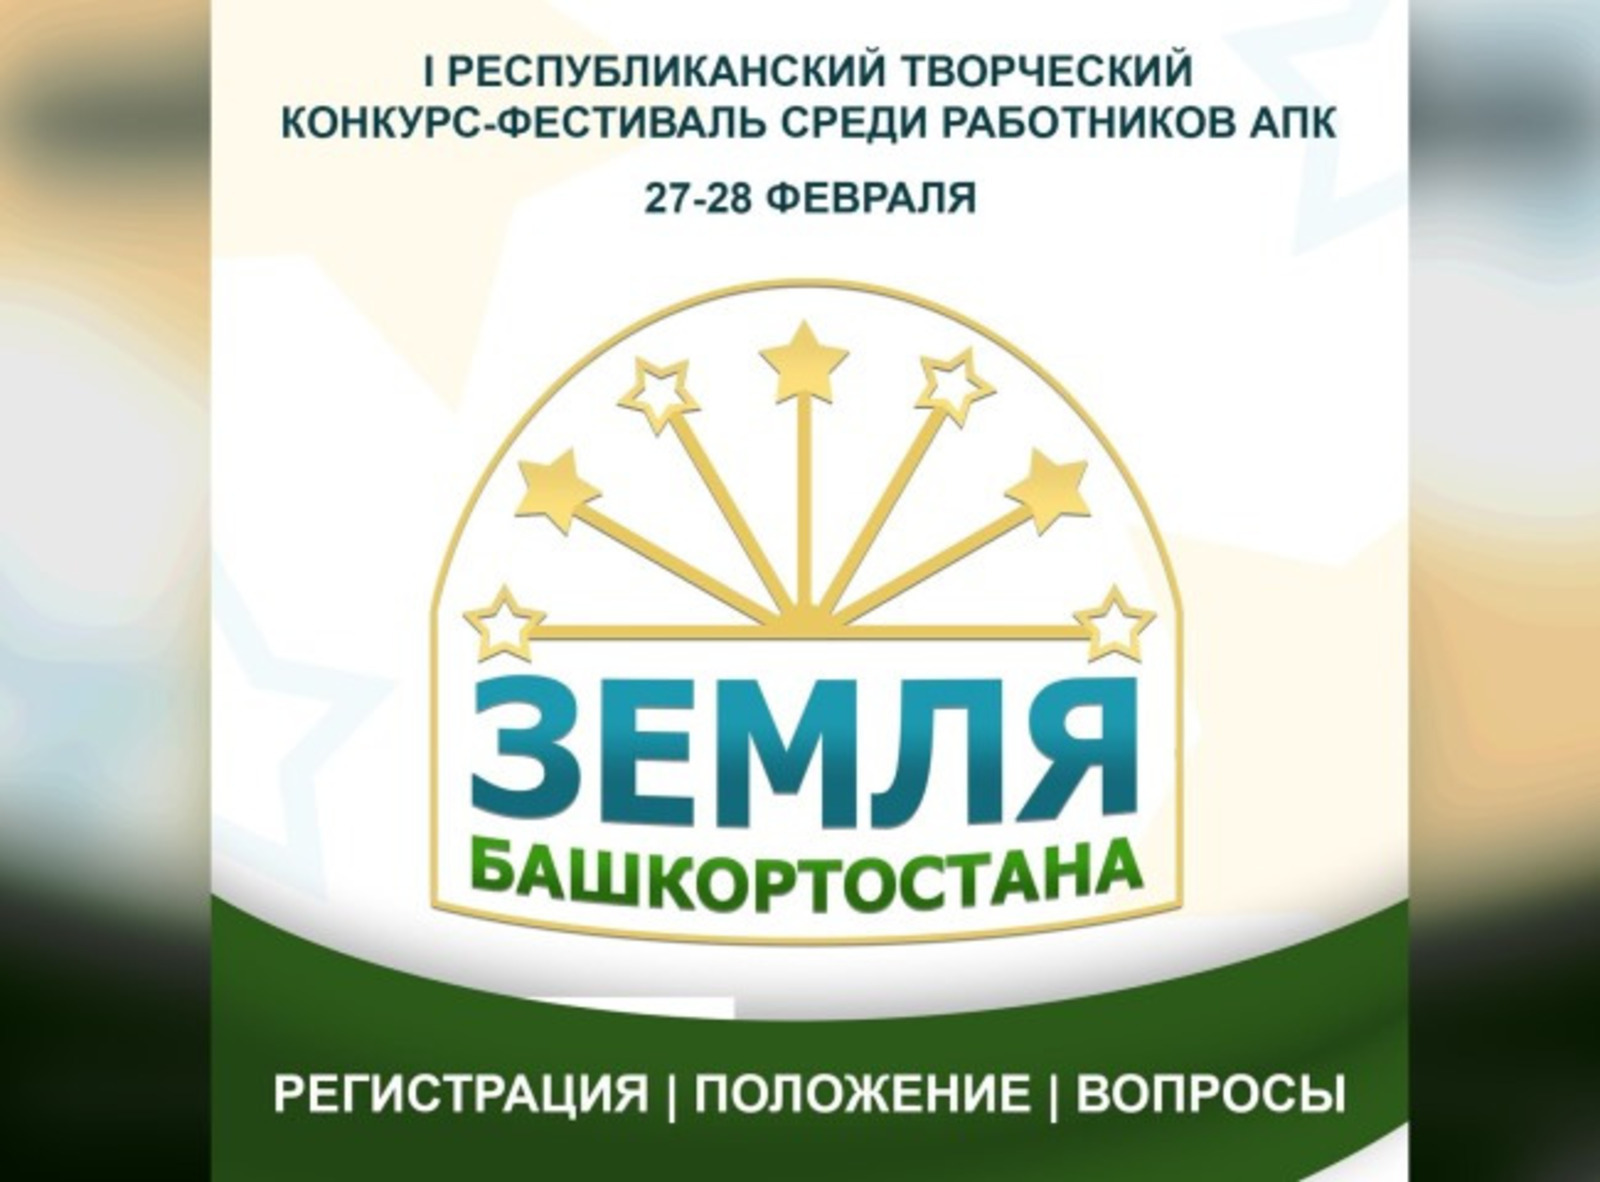 В Башкирии впервые пройдет республиканский творческий конкурс работников АПК